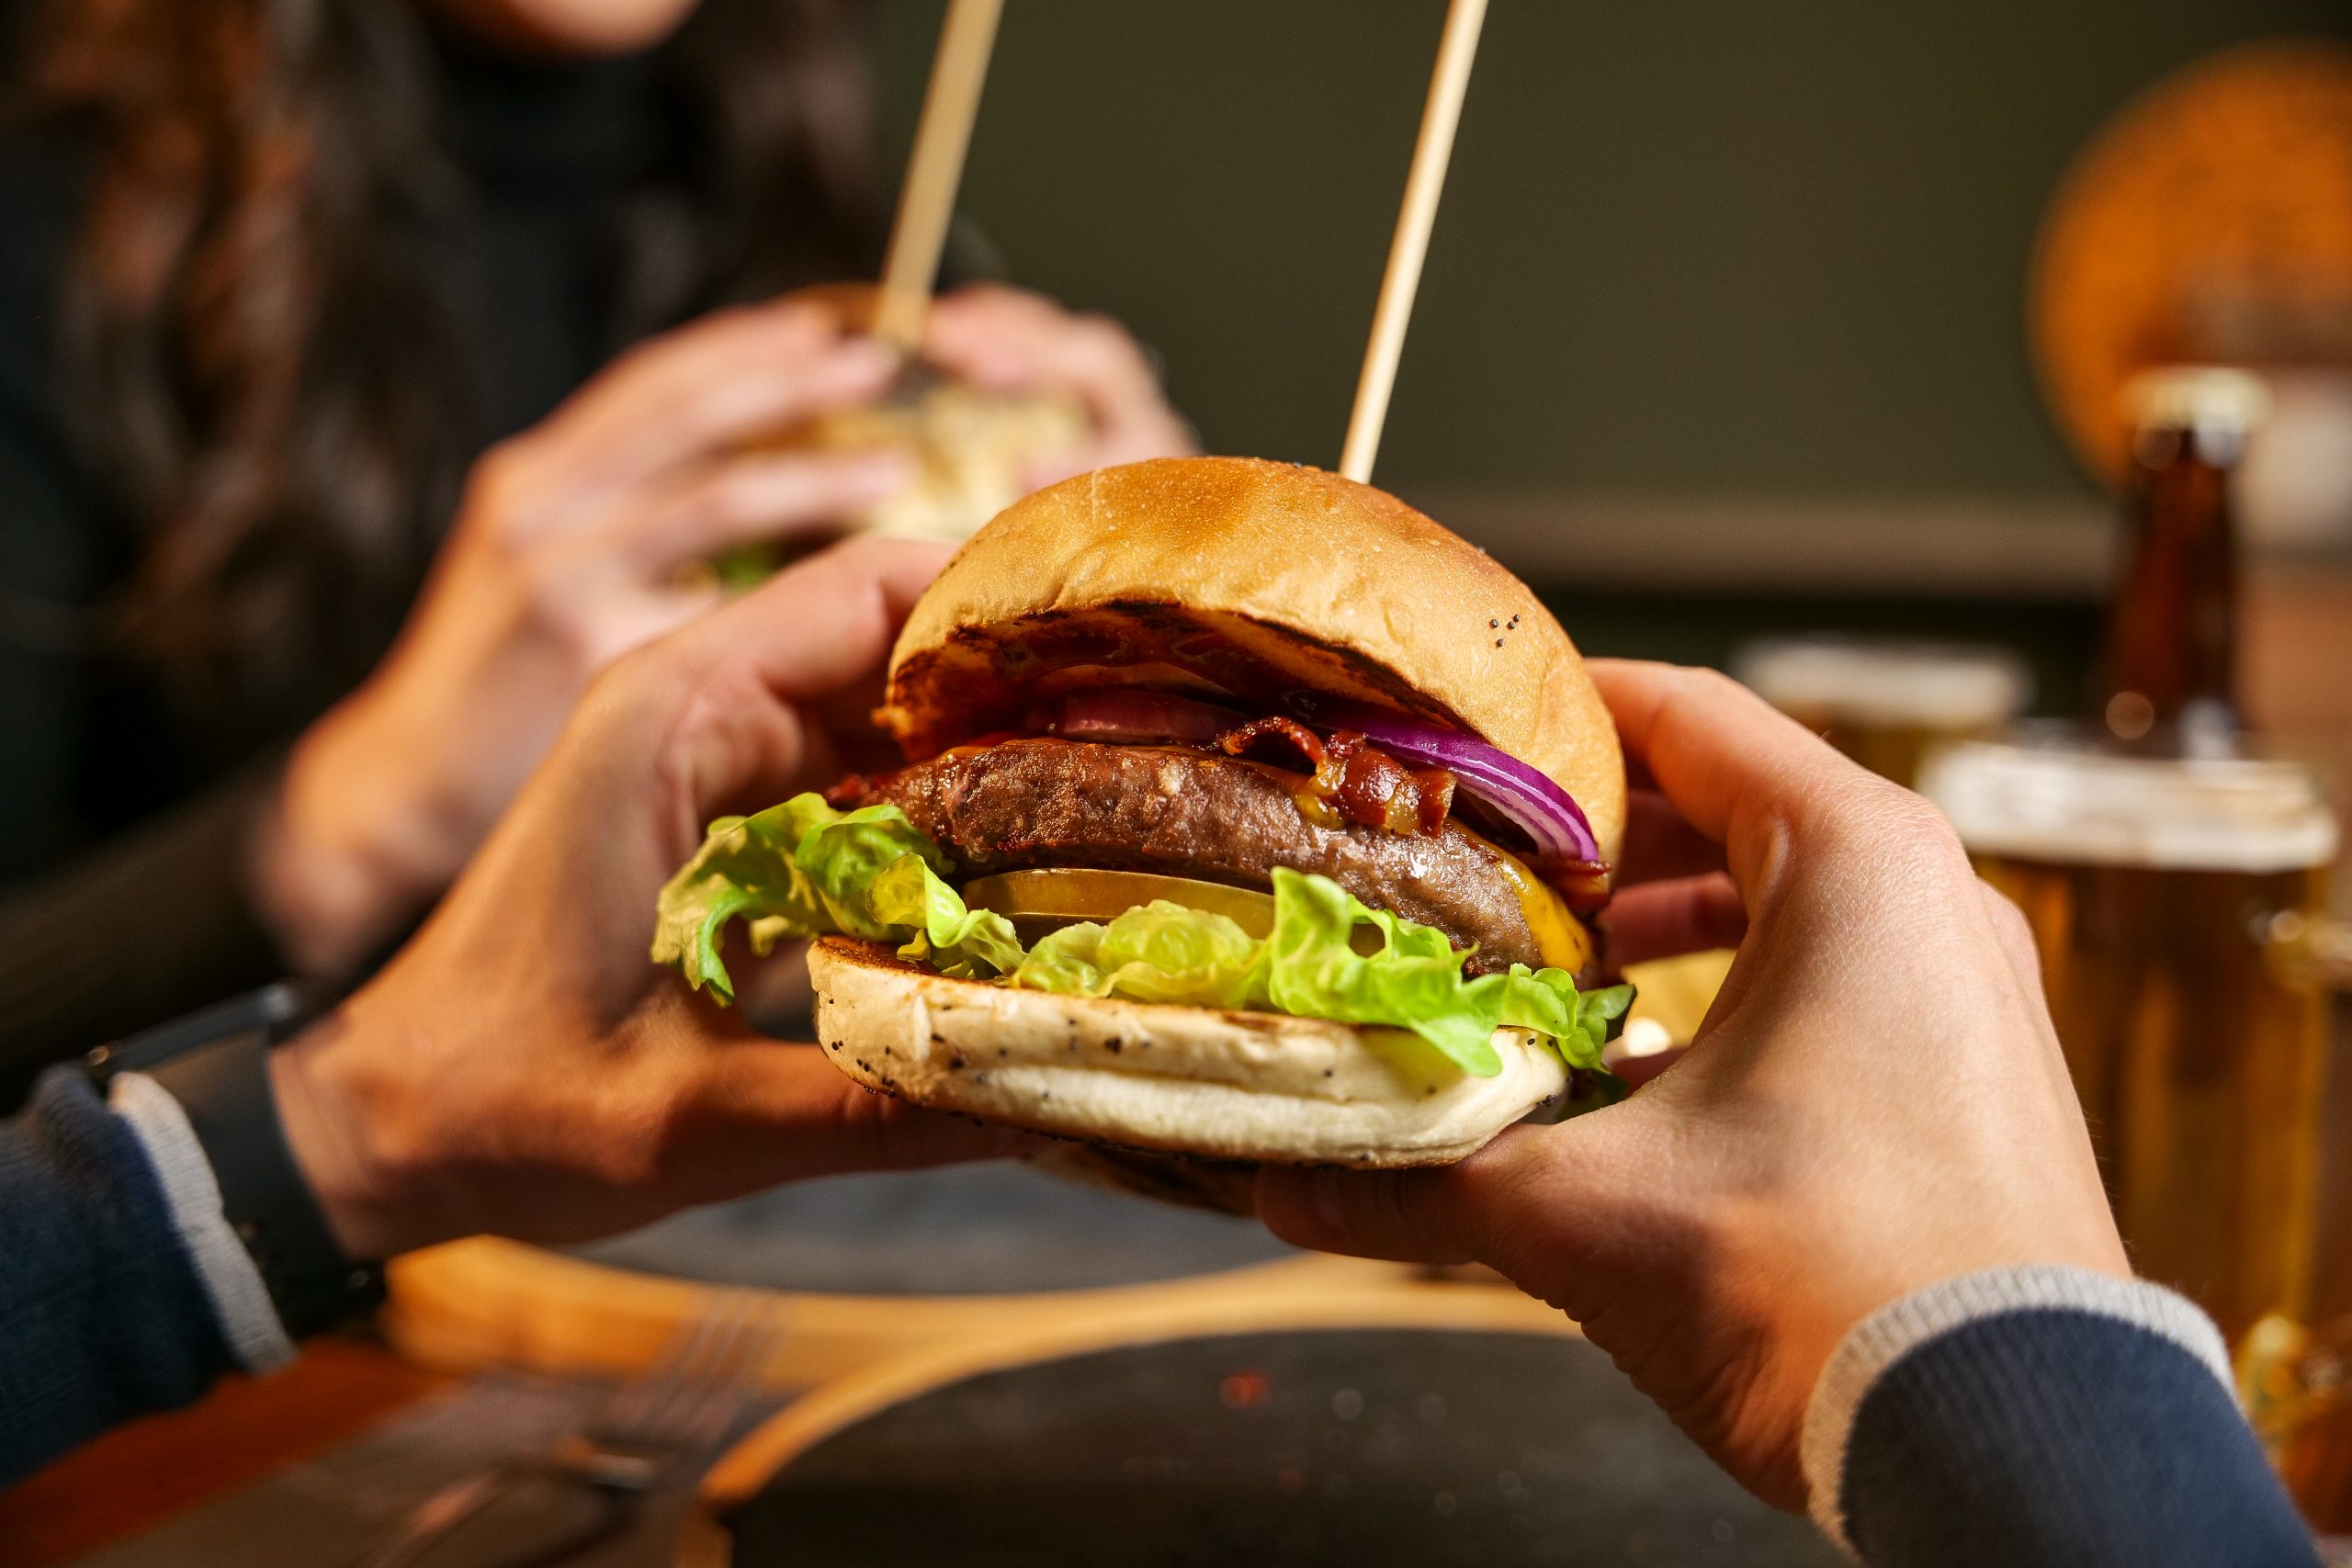 Az igazi „hamburgerbuci forradalom” valójában a gyorséttermi hálózatok térhódításának köszönhető.